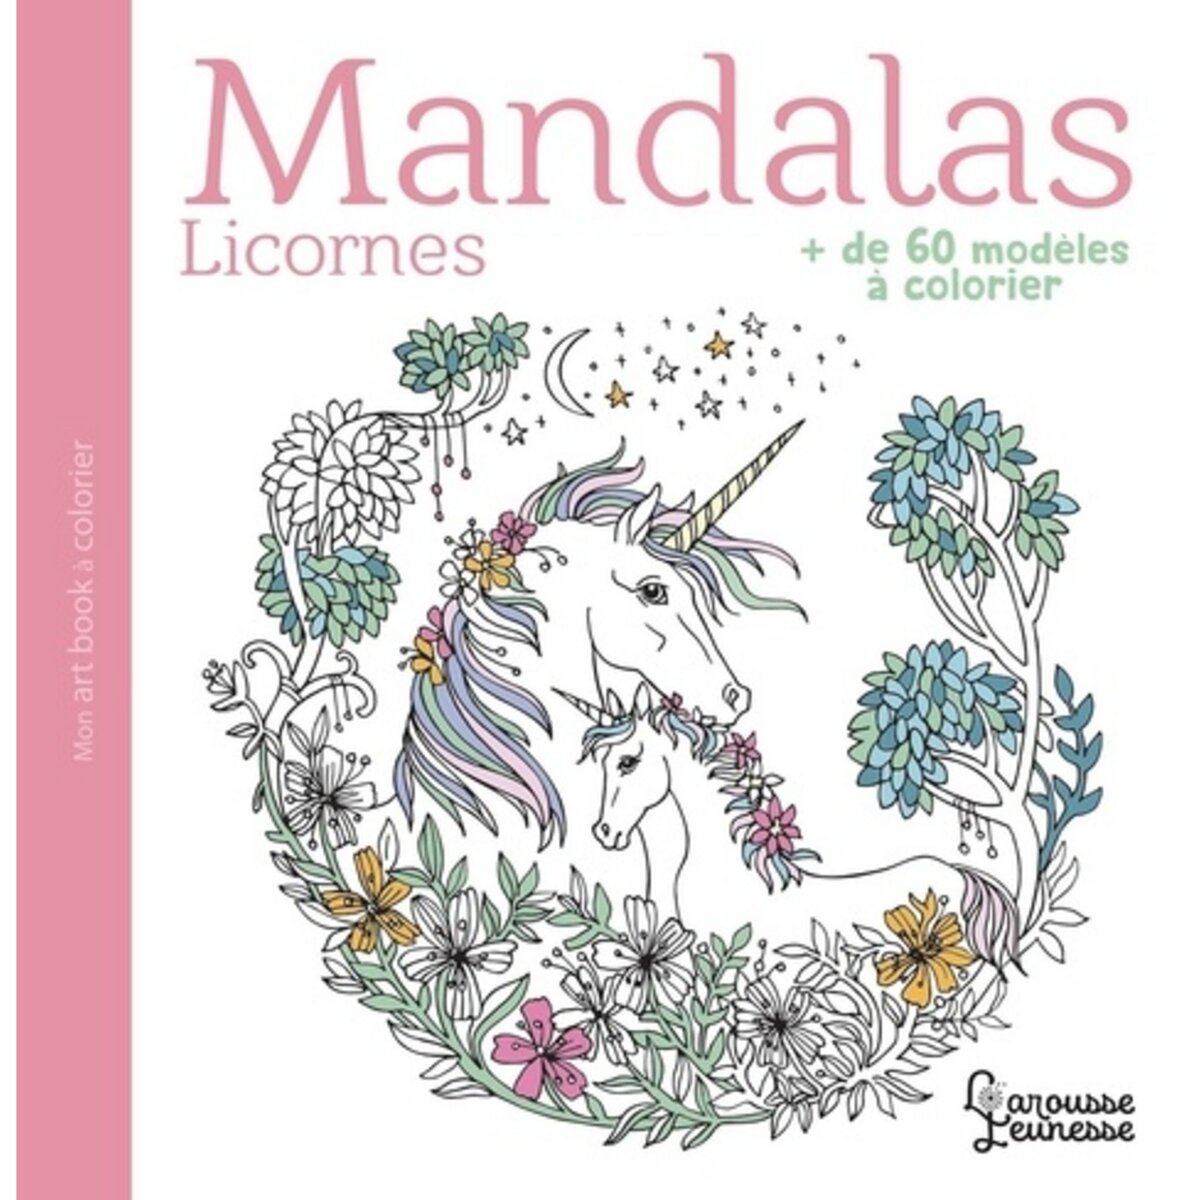  MANDALAS LICORNES. + DE 60 MODELES A COLORIER, Larousse jeunesse